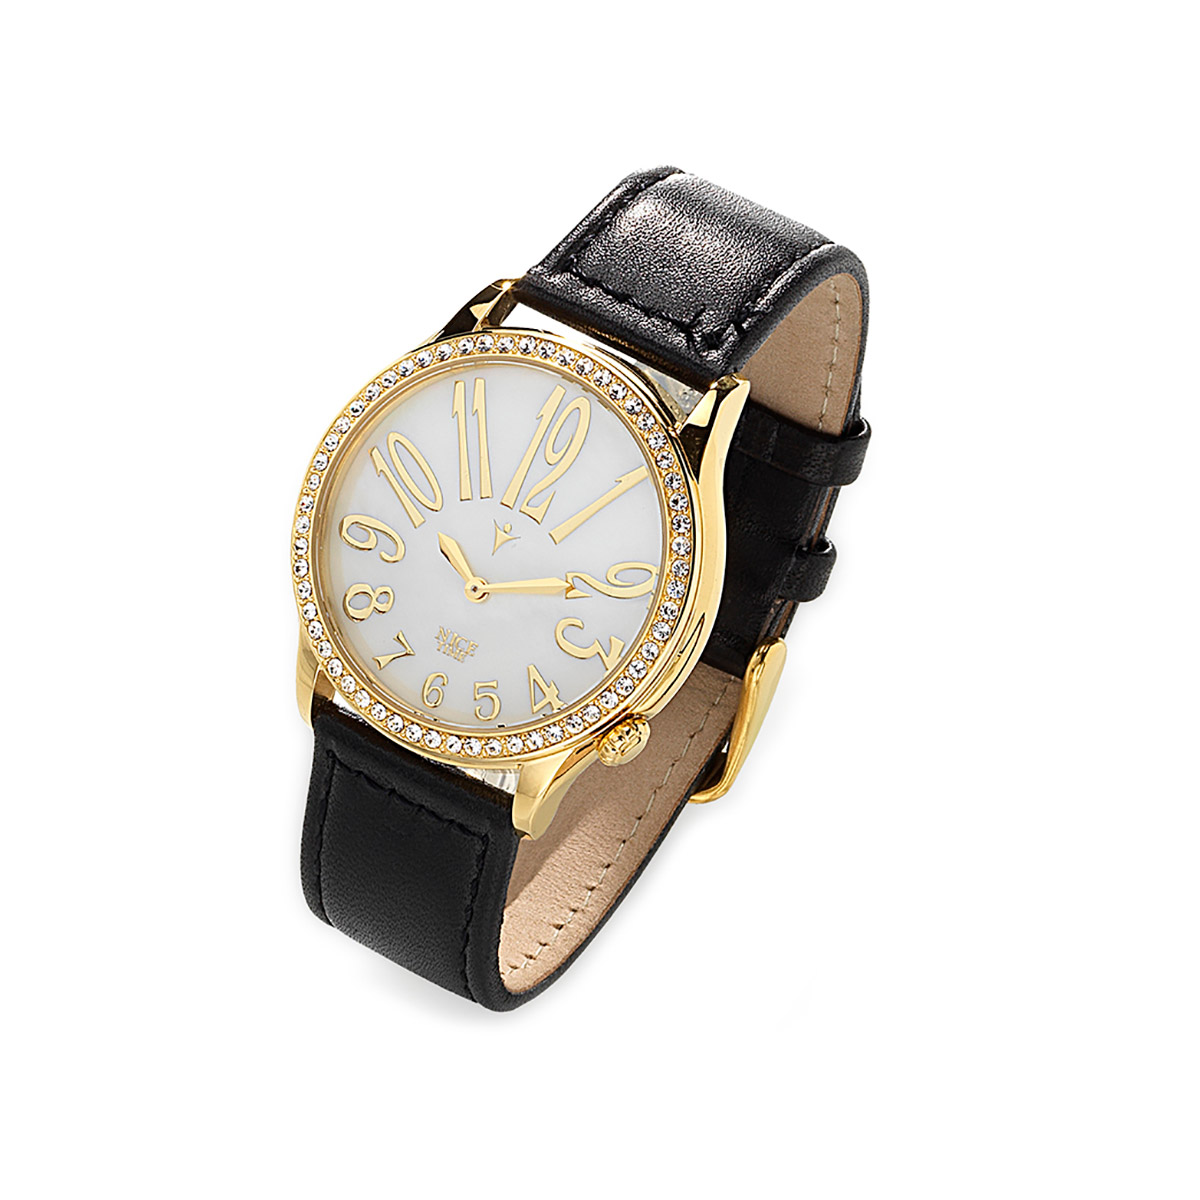 Reloj con correa de piel negra, con carátula de acero inoxidable en tono oro, centro blanco.